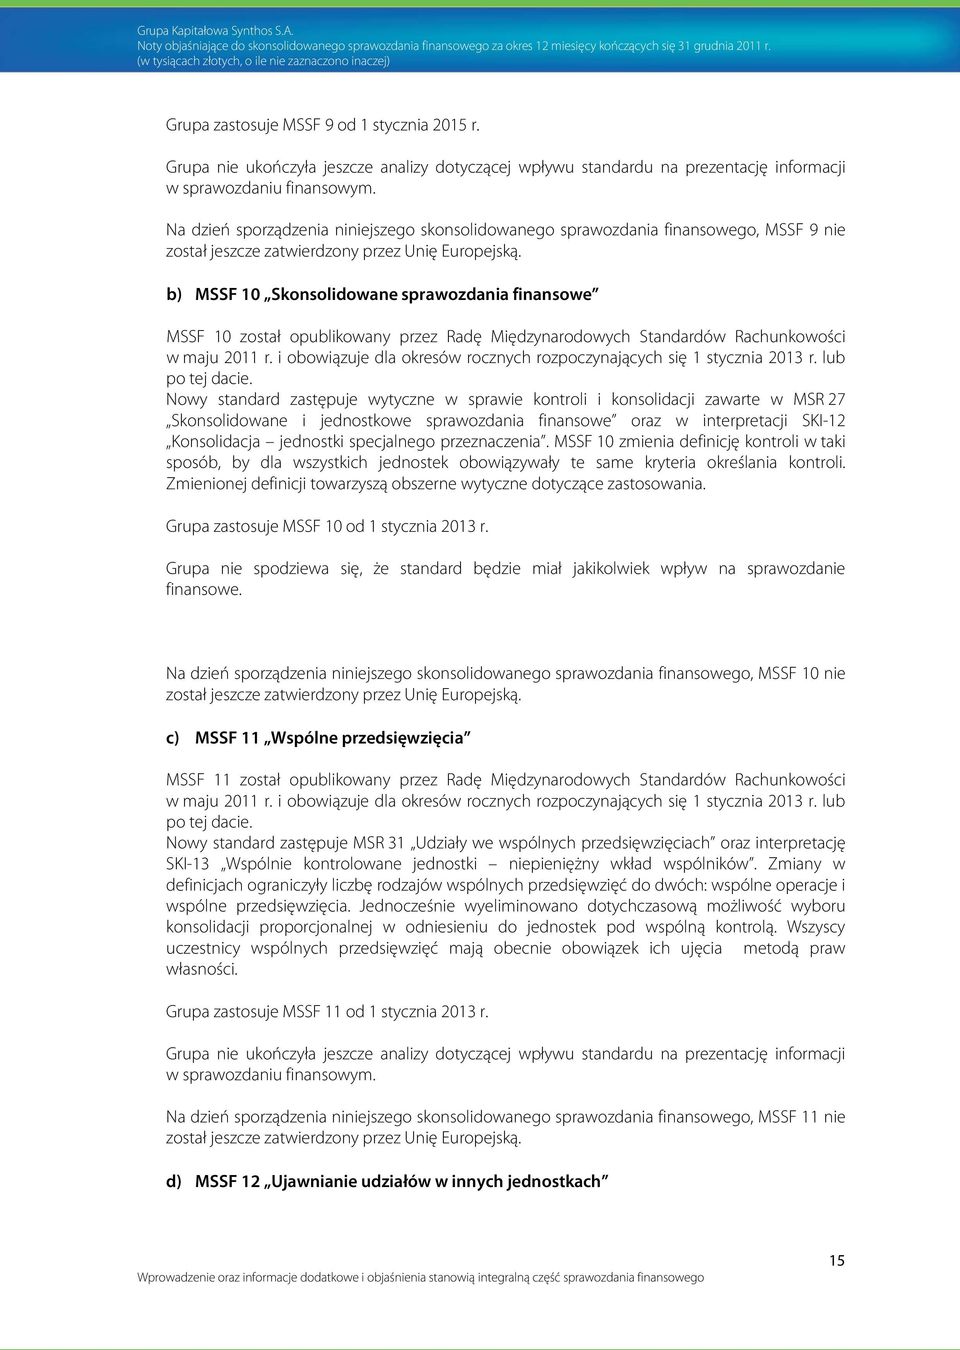 b) MSSF 10 Skonsolidowane sprawozdania finansowe MSSF 10 został opublikowany przez Radę Międzynarodowych Standardów Rachunkowości w maju 2011 r.